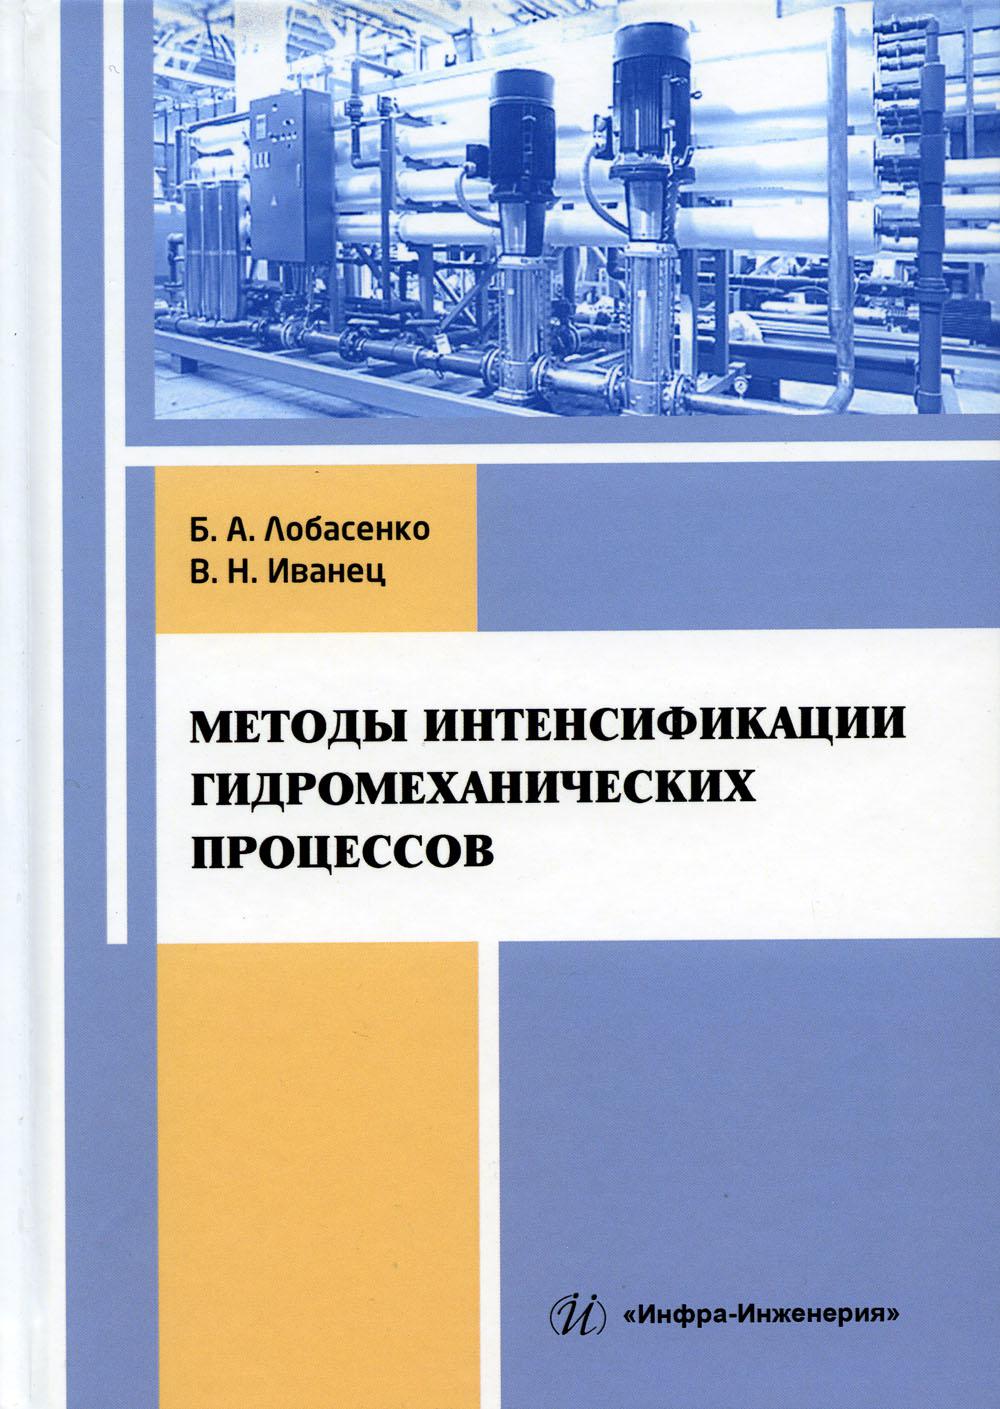 Методы интенсификации гидромеханических процессов: Учебное пособие